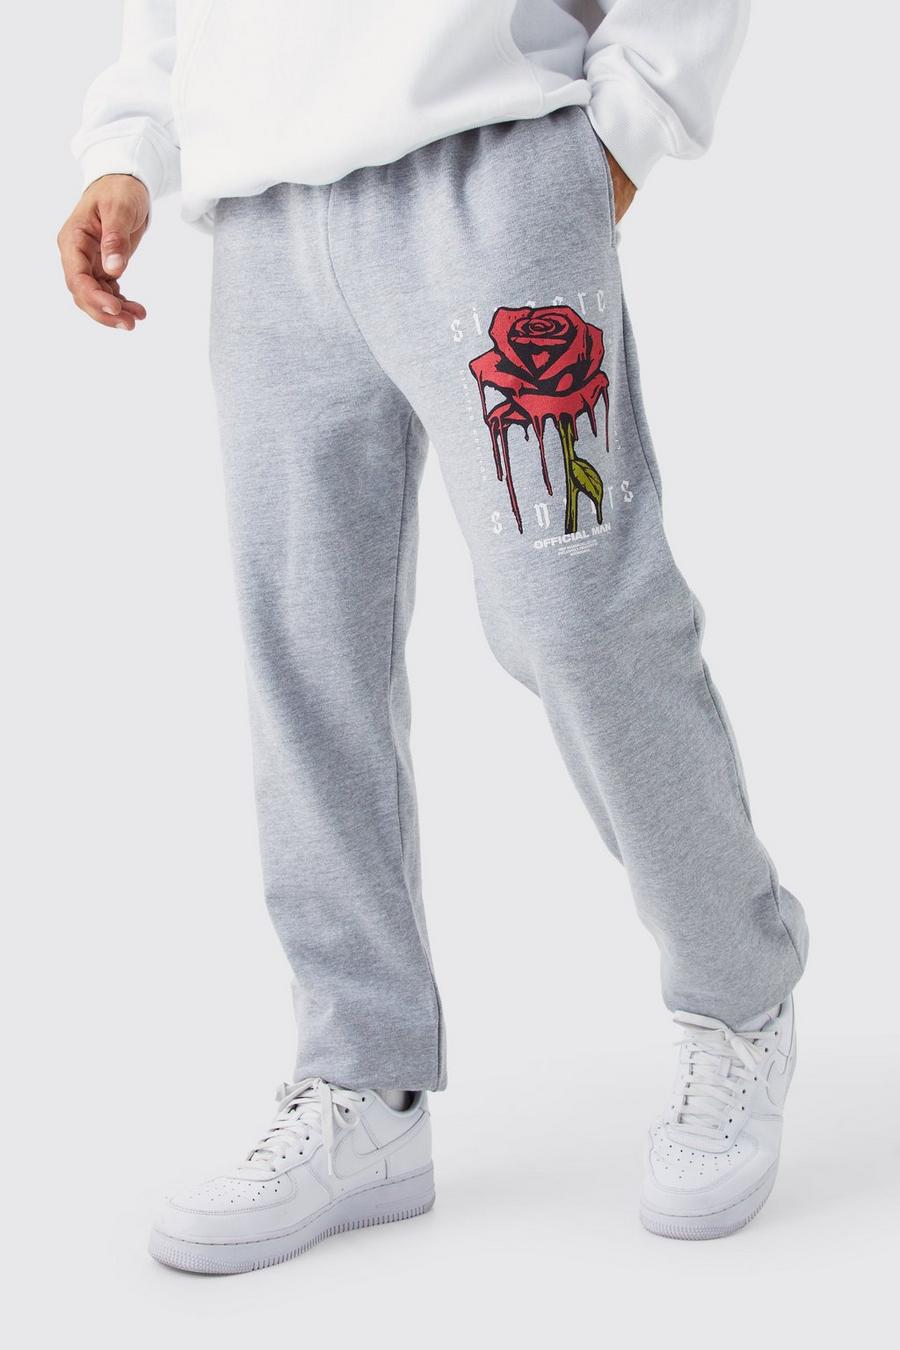 Pantalón deportivo con estampado gráfico de rosas, Grey marl grigio